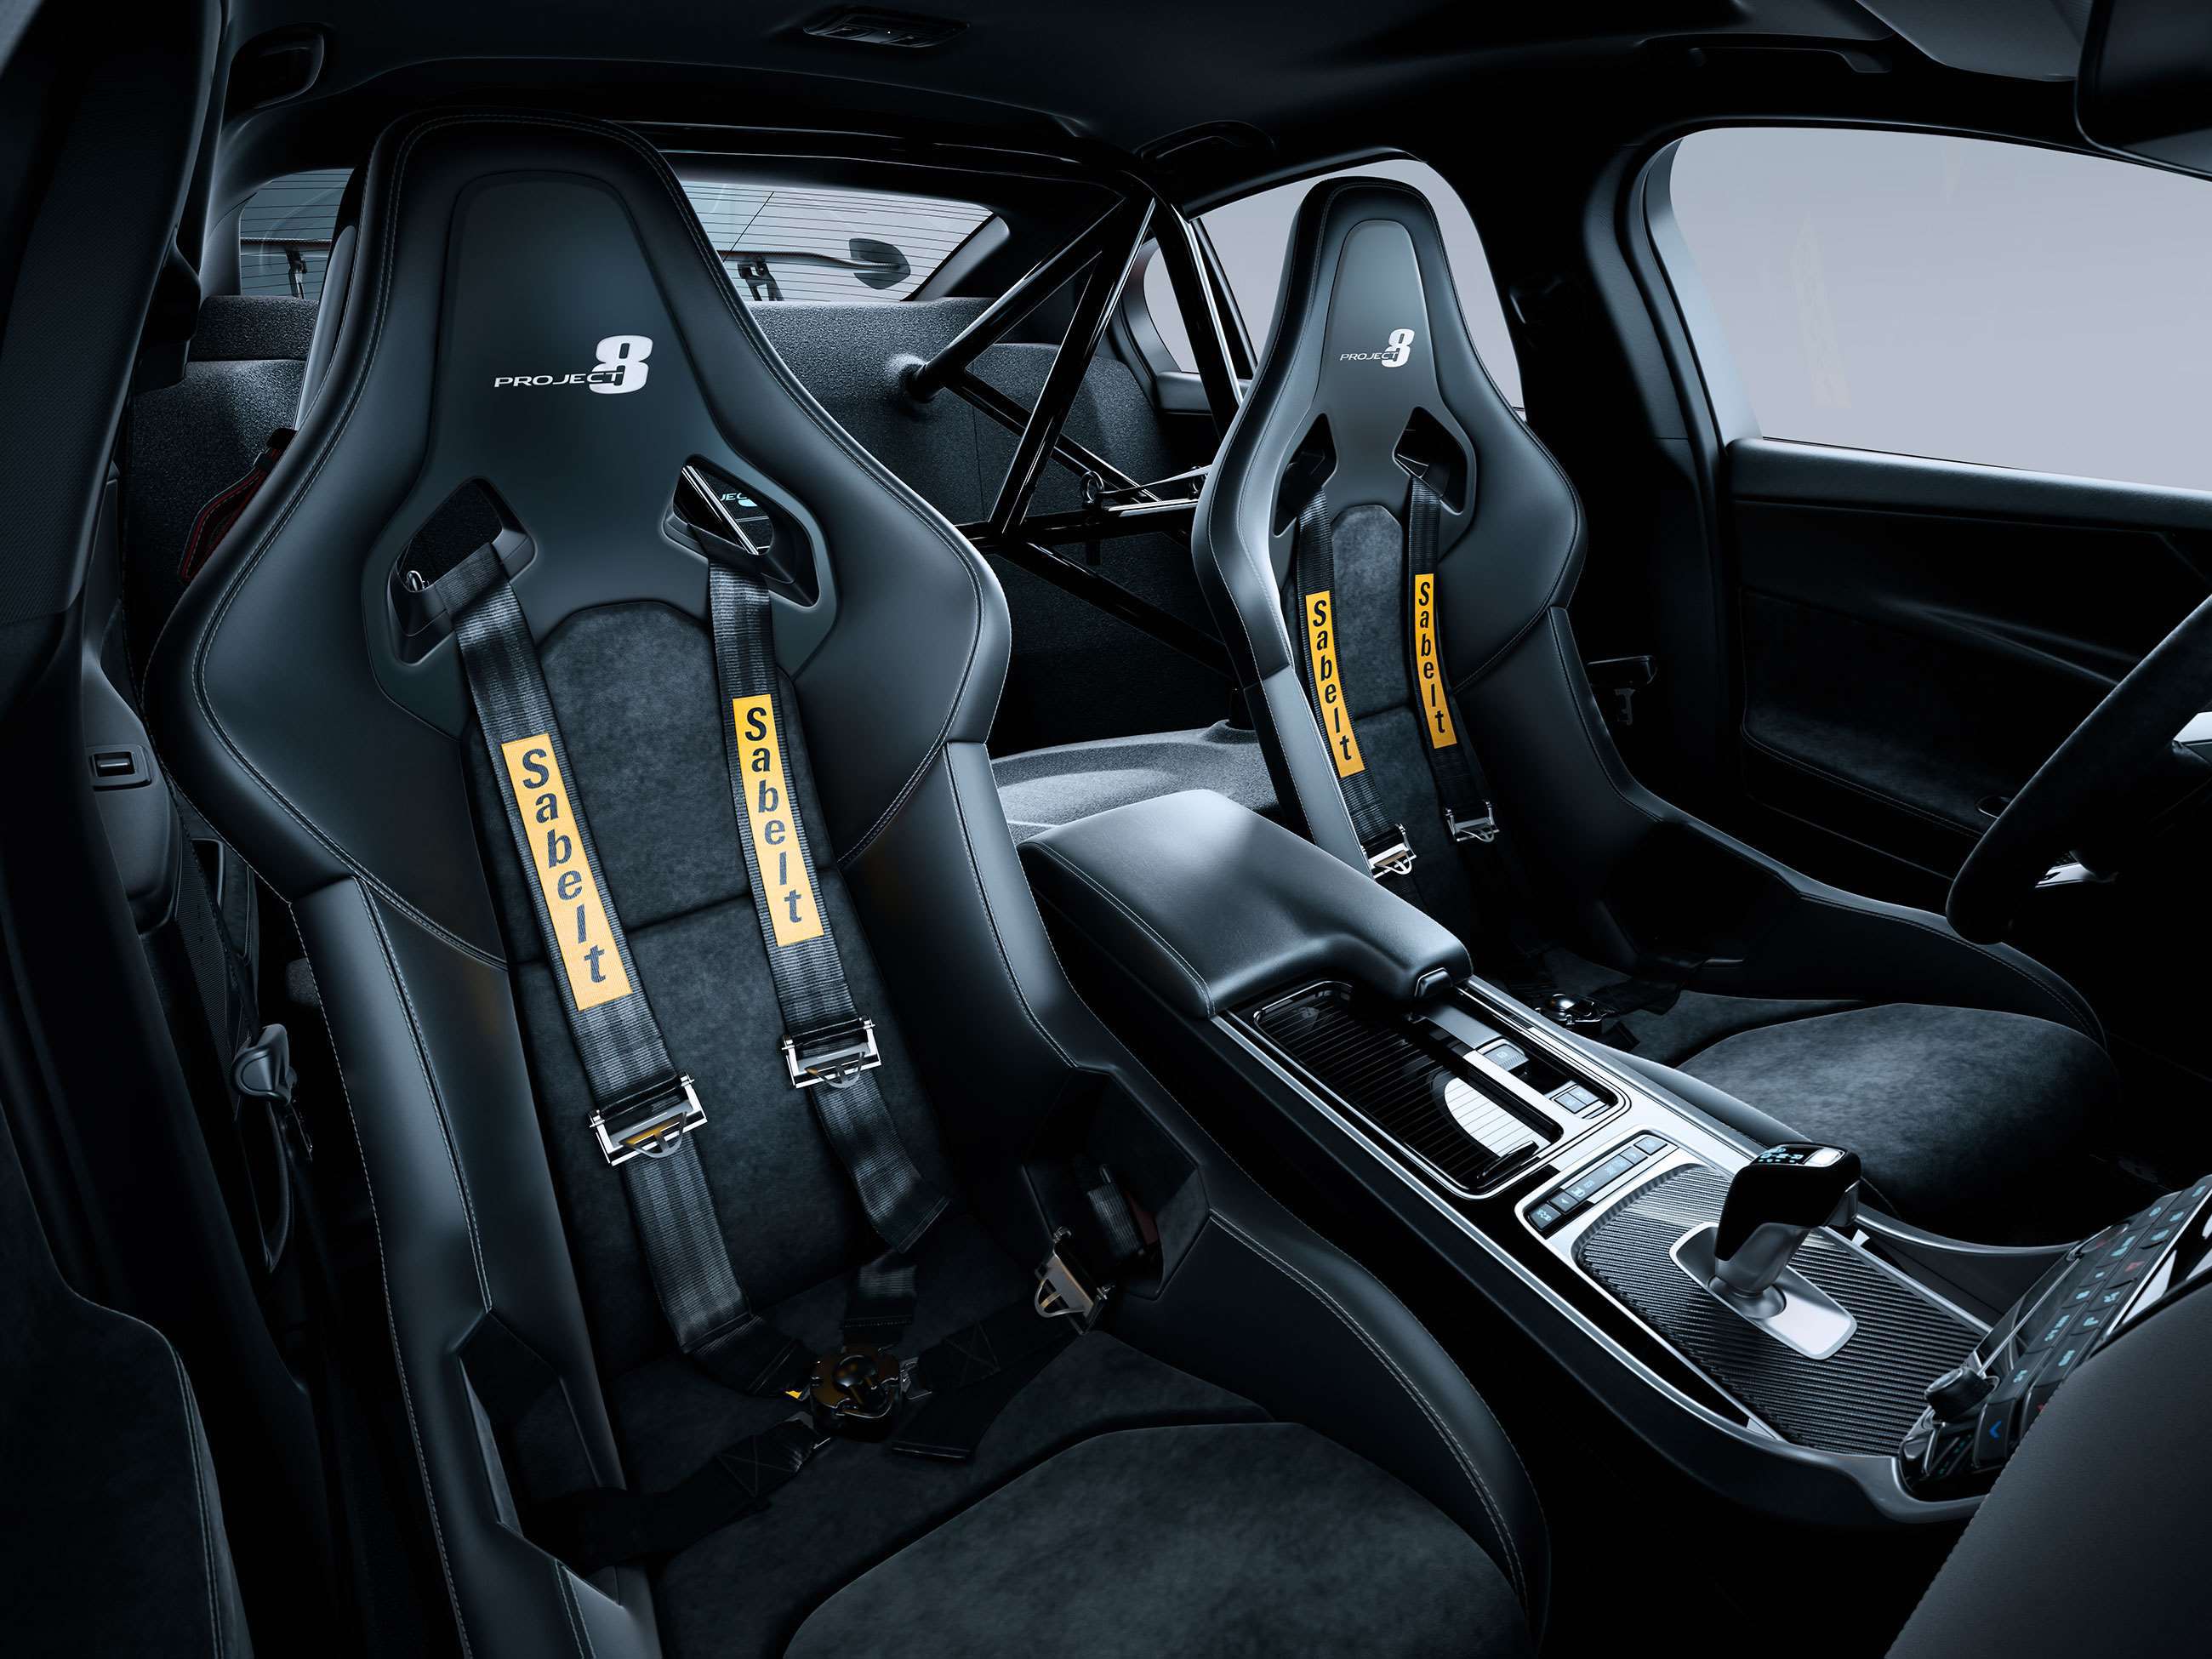 jaguar-xe-project-8-rear-seat-delete-goodwood-11062021.jpg